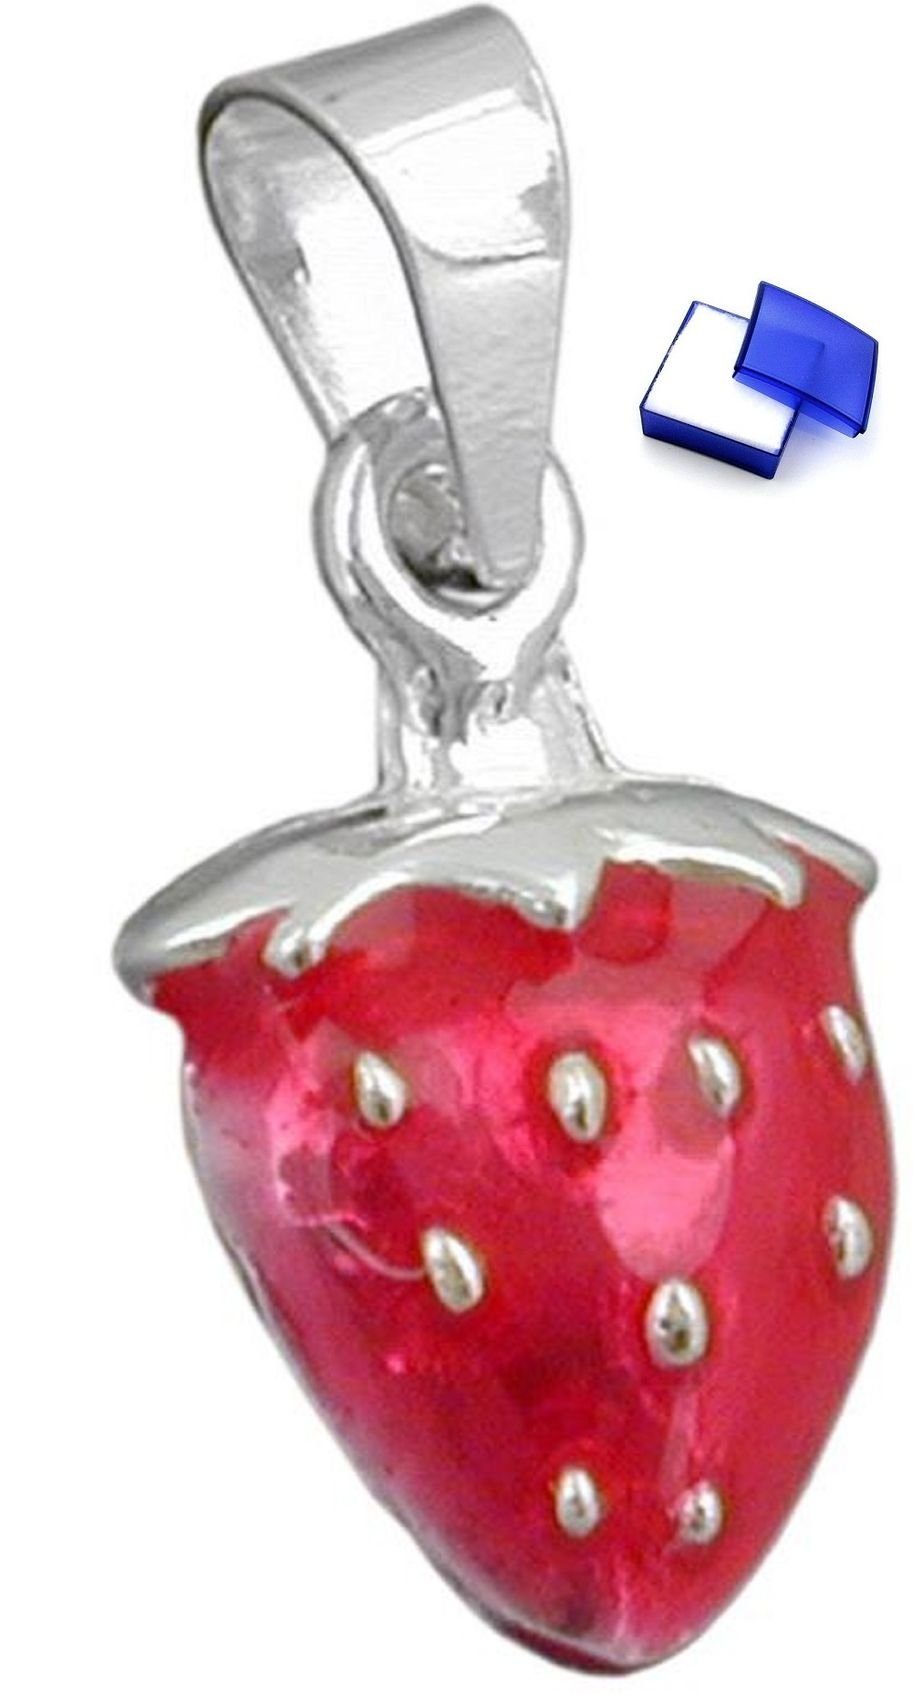 unbespielt Kettenanhänger Kettenanhänger Anhänger wie eine Erdbeere 925 Silber 14 x 9 mm inklusive Schmuckbox, Silberschmuck für Kinder